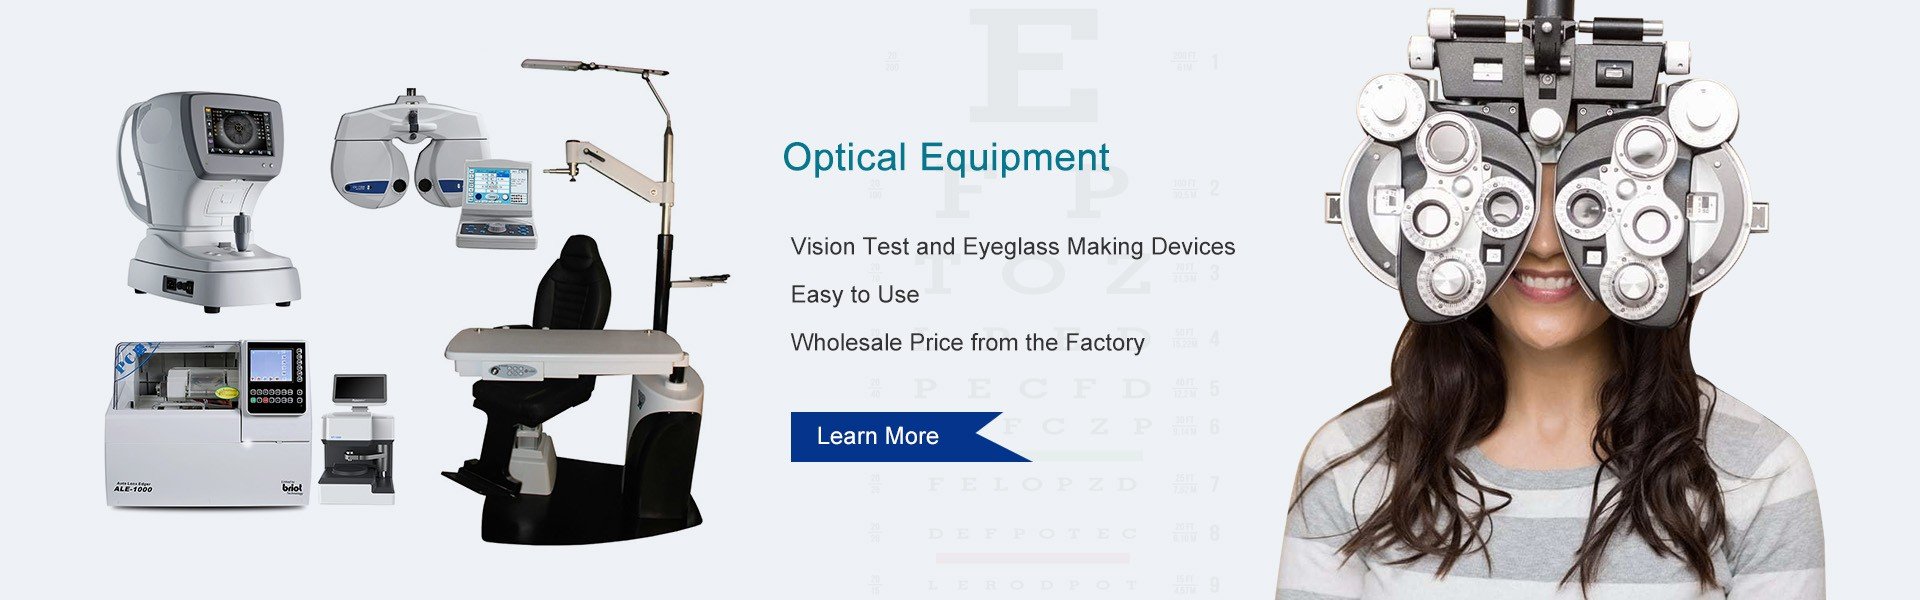 Optical Equipment